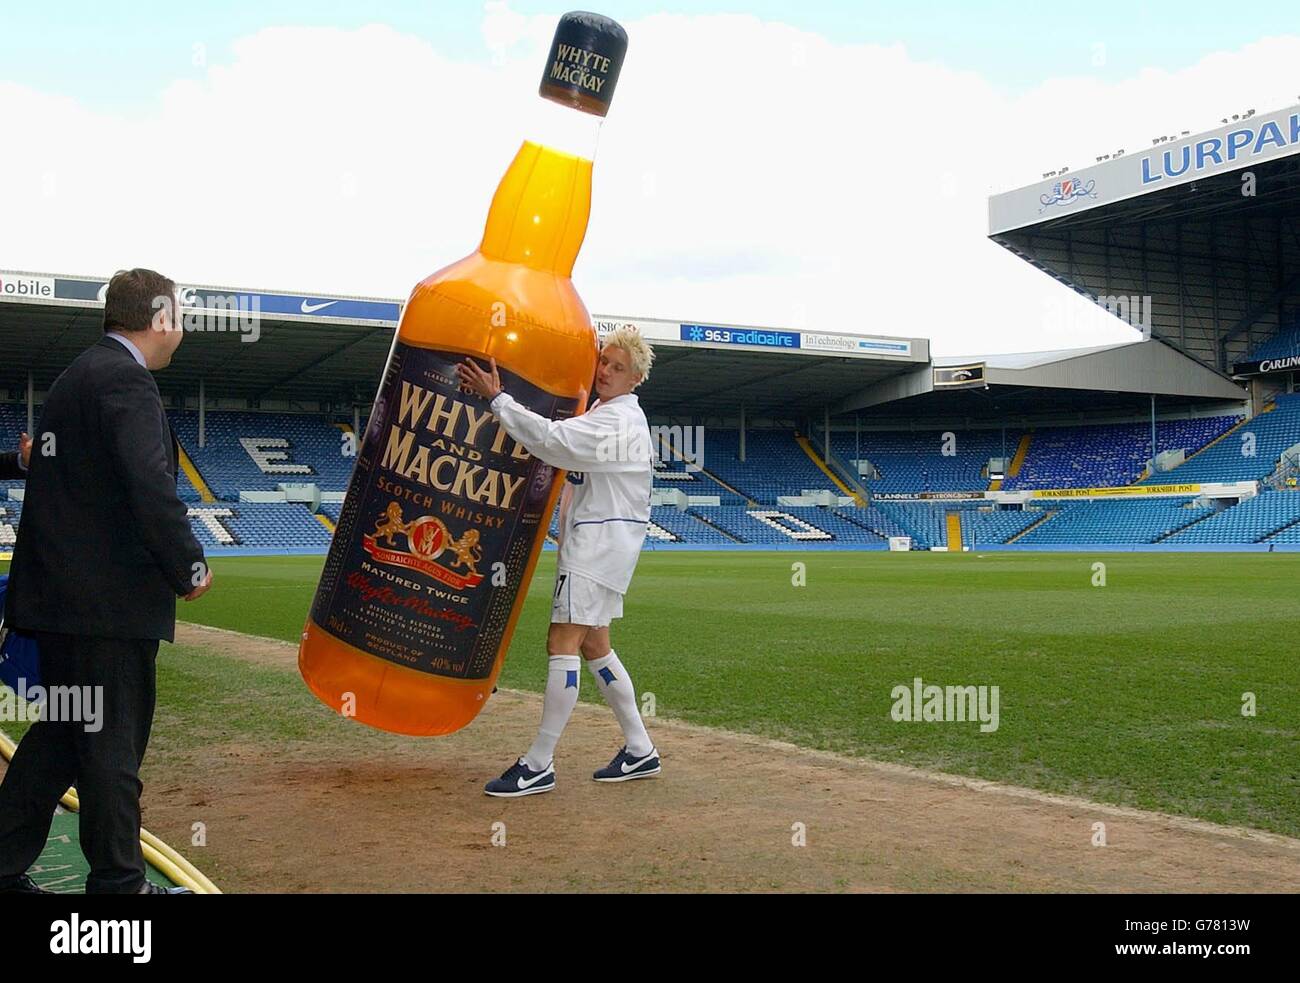 Der Stürmer von Leeds United, Alan Smith, trägt eine große Replik-Flasche der neuen Multi-Millionen-Pfund-Sponsoren des Clubs, Whyte und Mackay Whisky, von ihrem Elland Road Pitch, nachdem der neue Sponsorenvertrag für Leeds bekannt gegeben wurde. Stockfoto